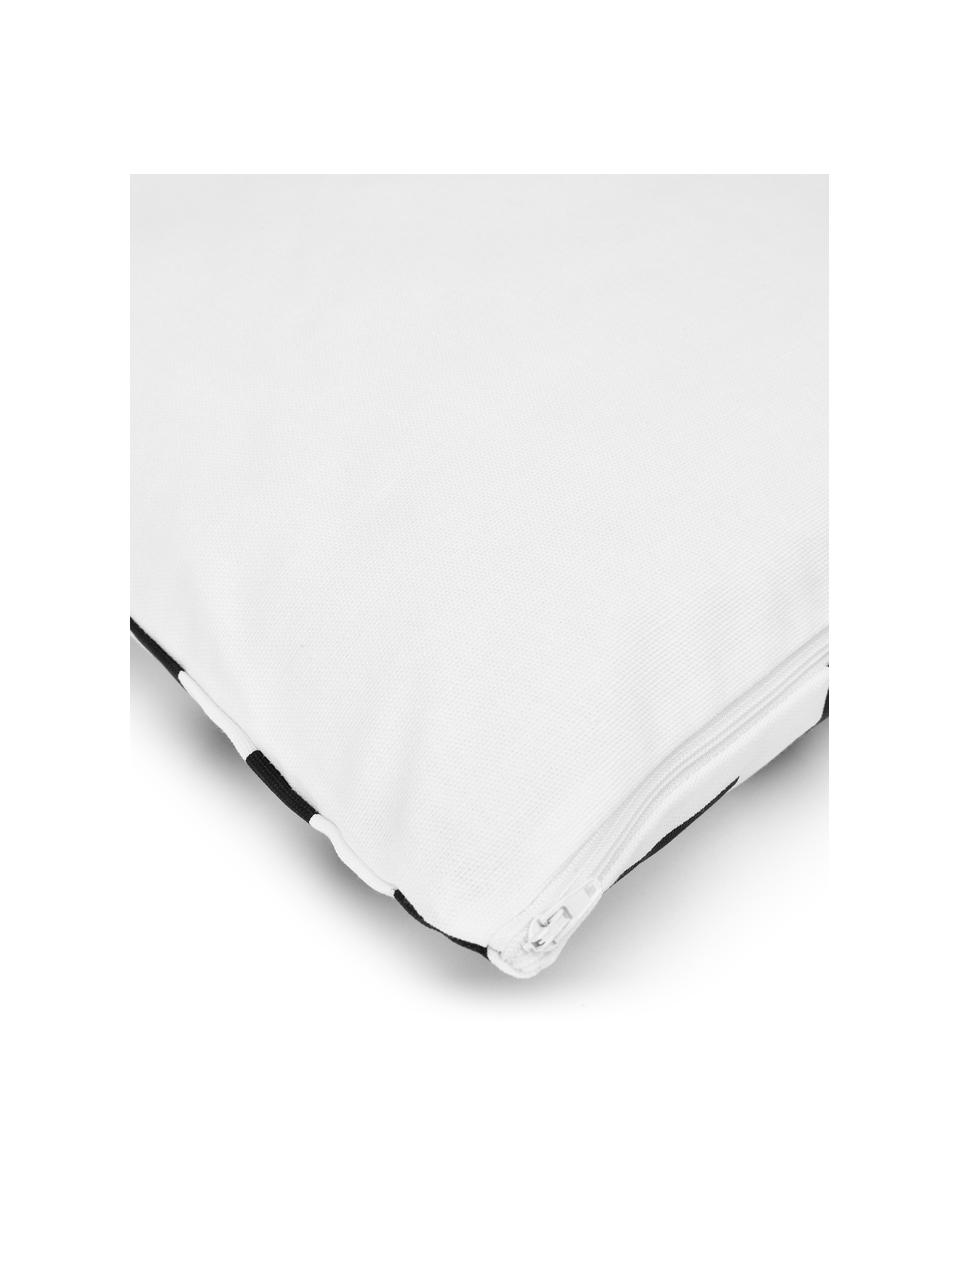 Katoenen kussenhoes Bram met grafisch patroon, 100% katoen, Wit, zwart, B 45 x L 45 cm